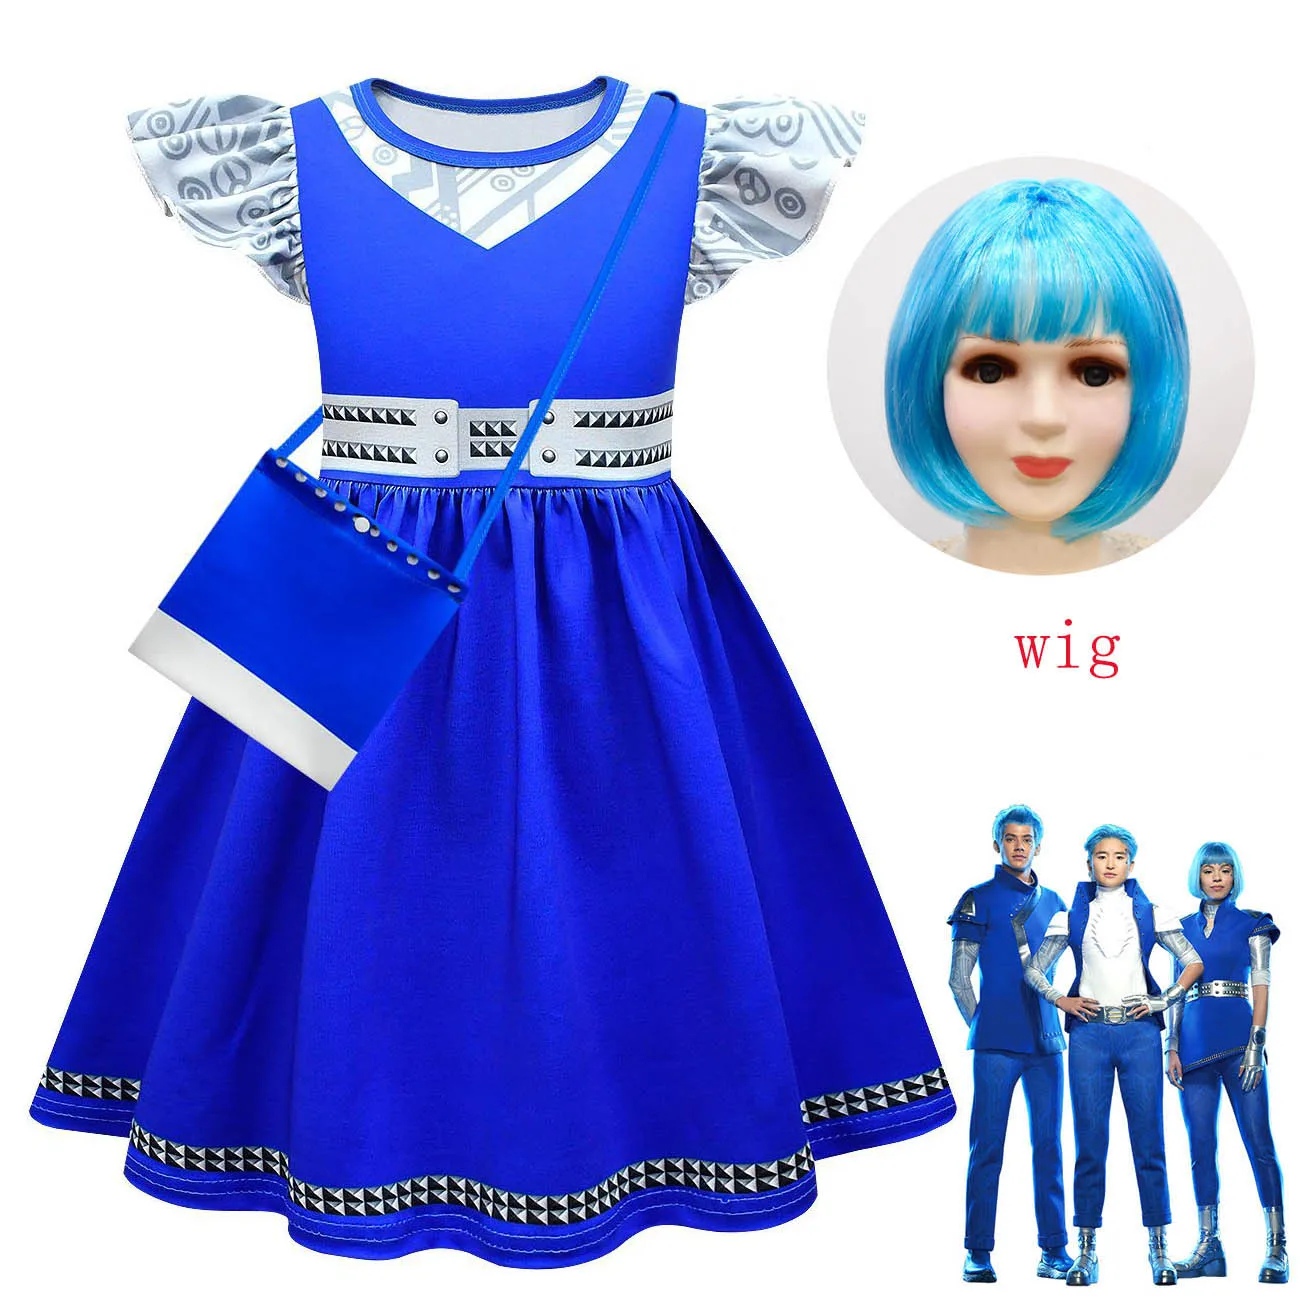 

Платье для девочек, костюм Эддисона для косплея с зомби кампусом 3, костюм на Хэллоуин, детские синие платья принцессы с оборками, детская одежда для дня рождения